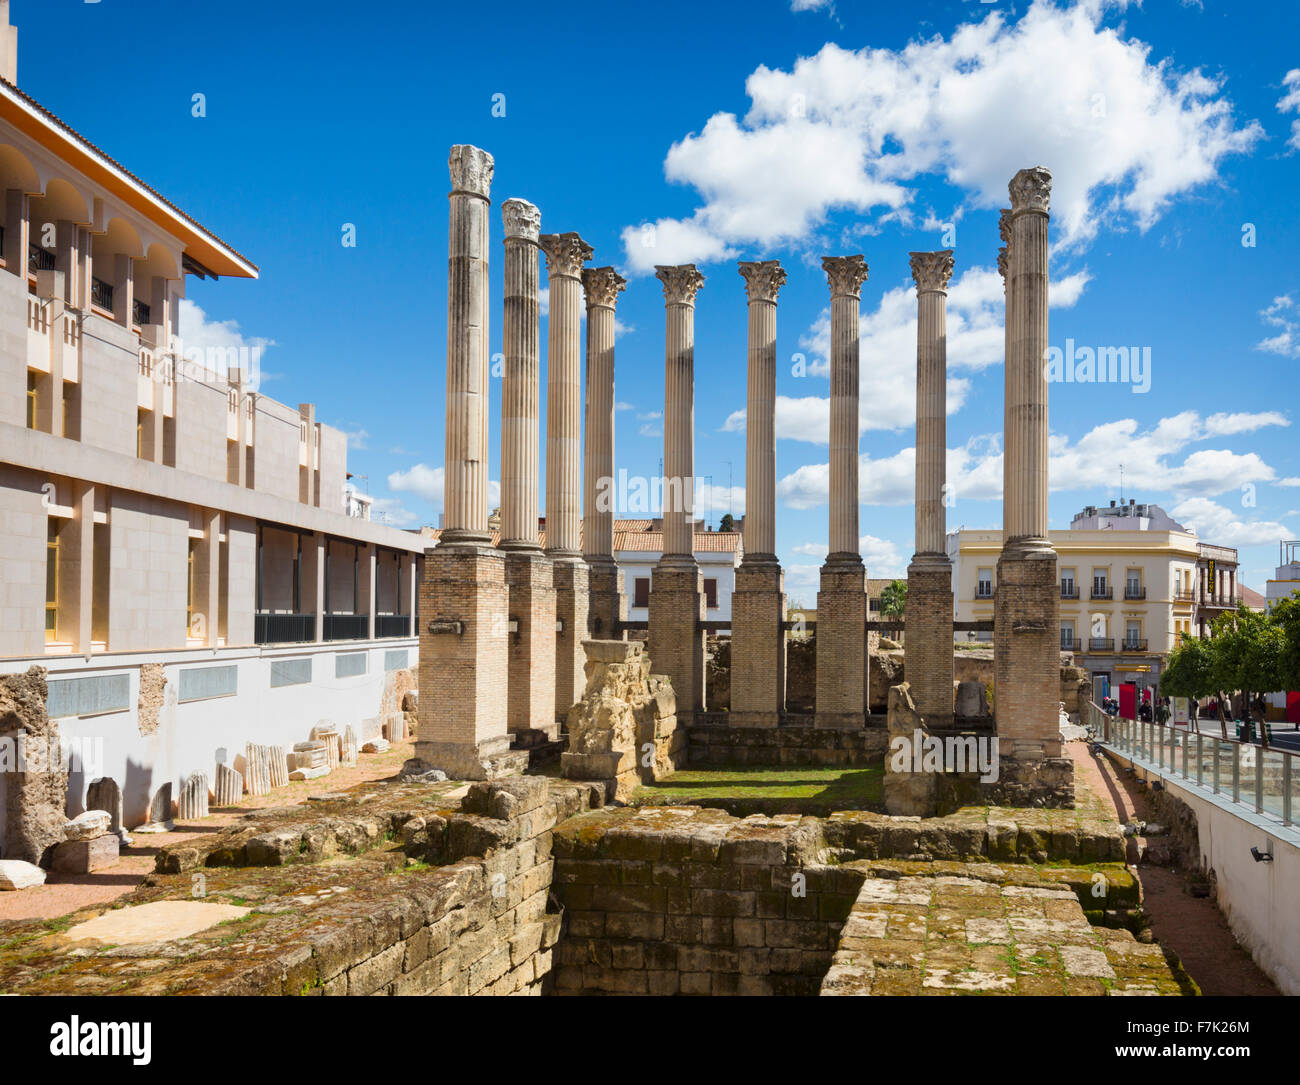 Córdoba, provincia de Córdoba, Andalucía, sur de España. Columnas con capiteles corintios del siglo I A.C. el templo romano. Foto de stock